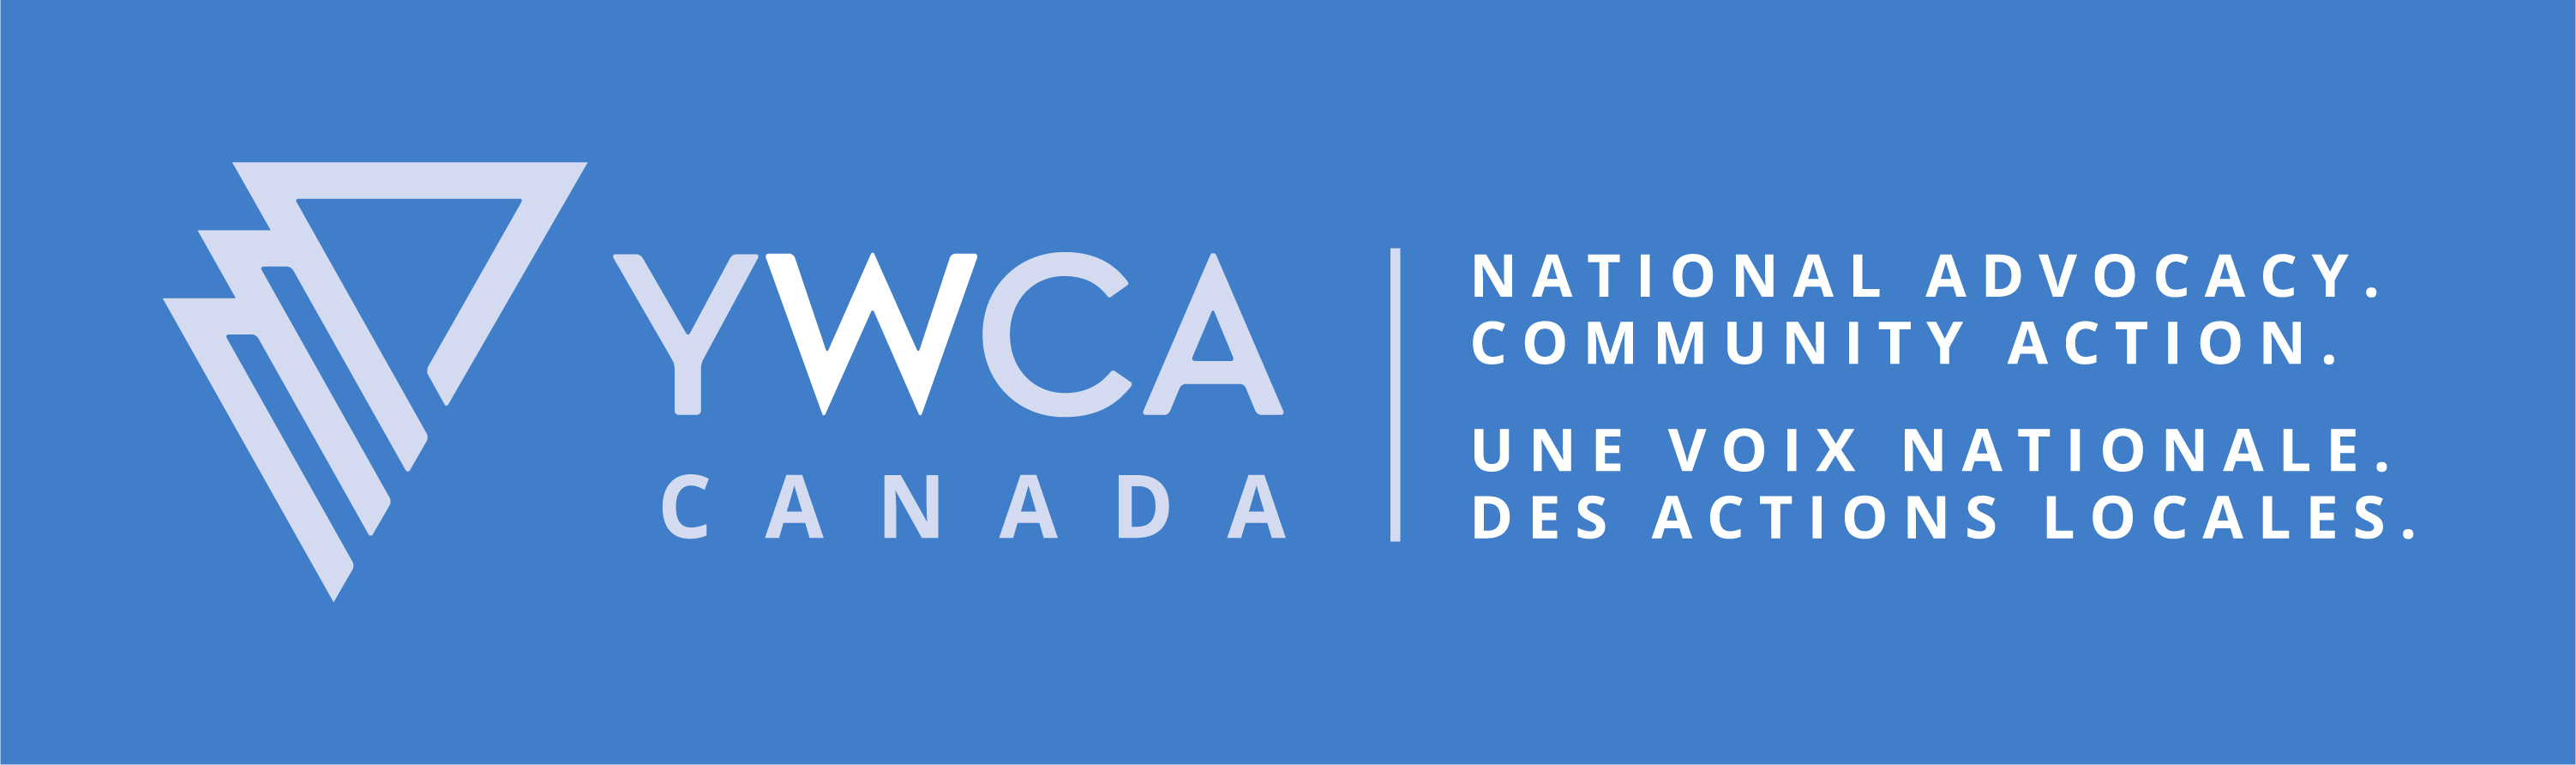 YWCA Canada logo